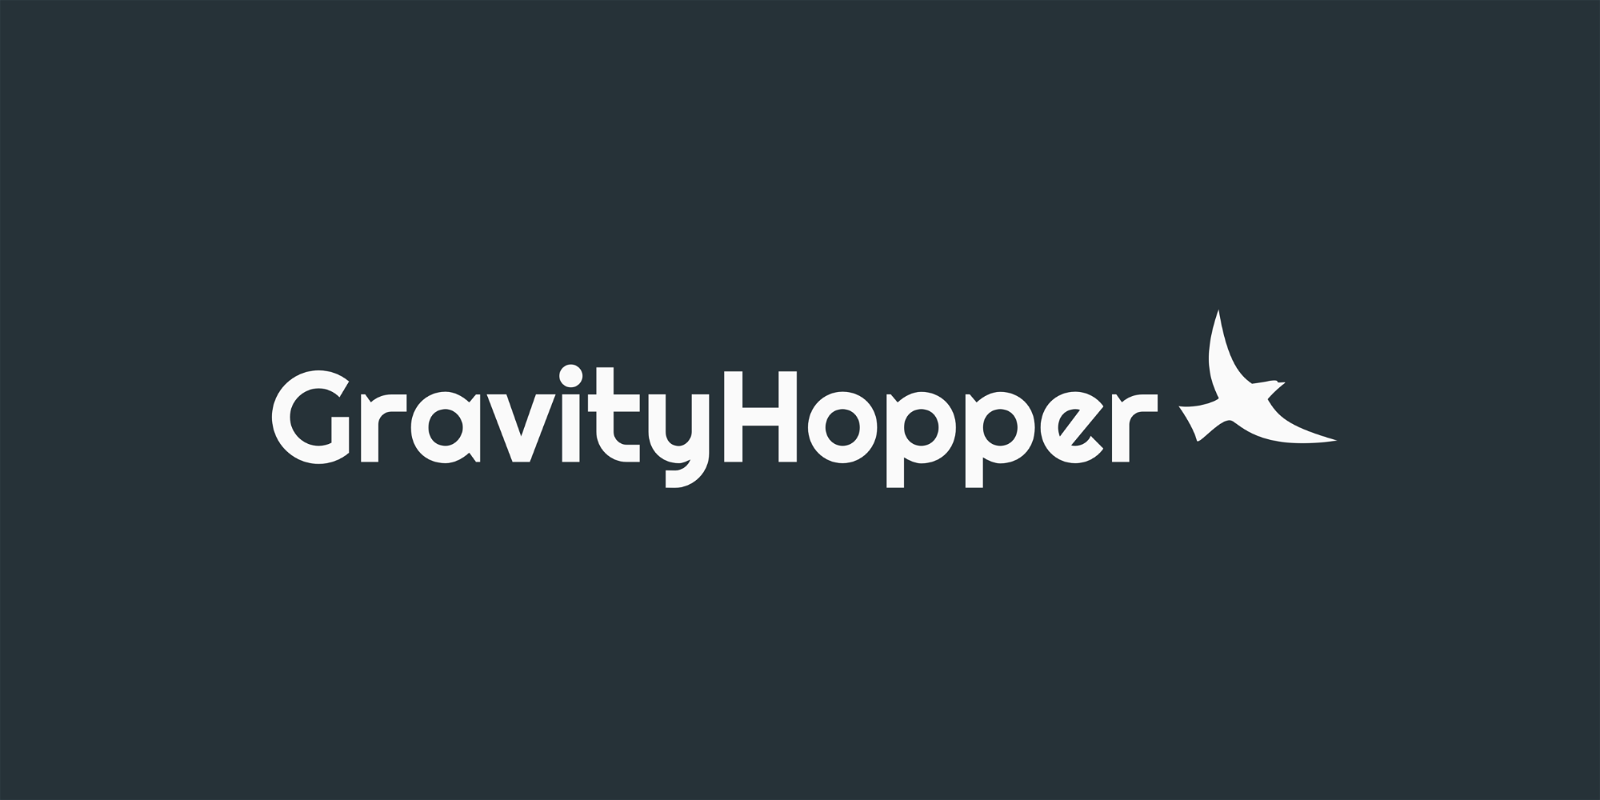 Gravity Hopper